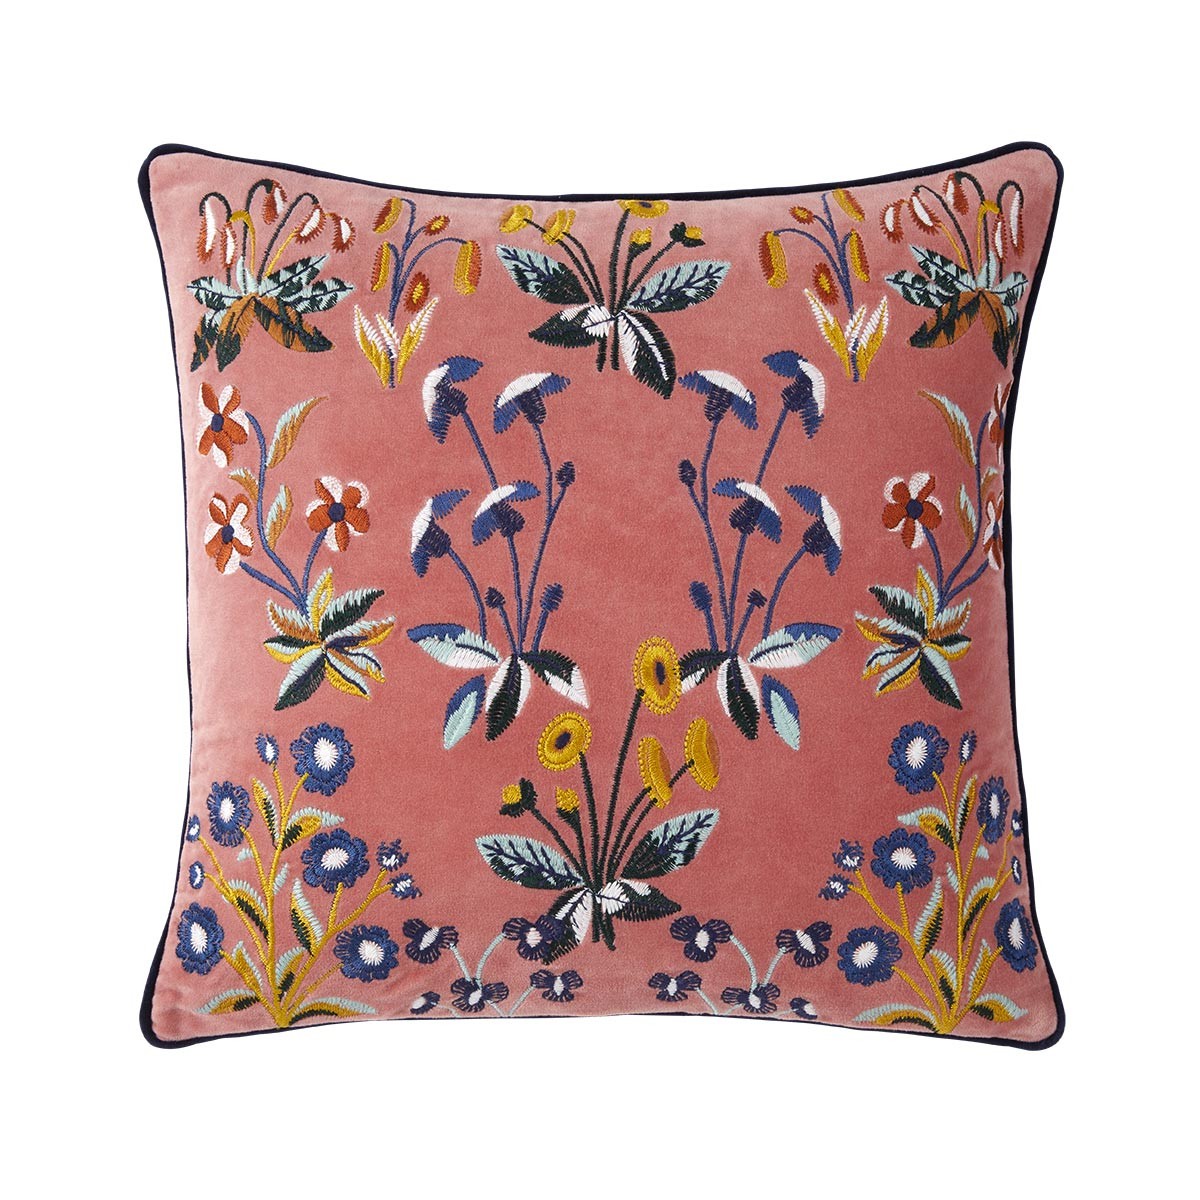 Renaissance Floral Decorative Pillow